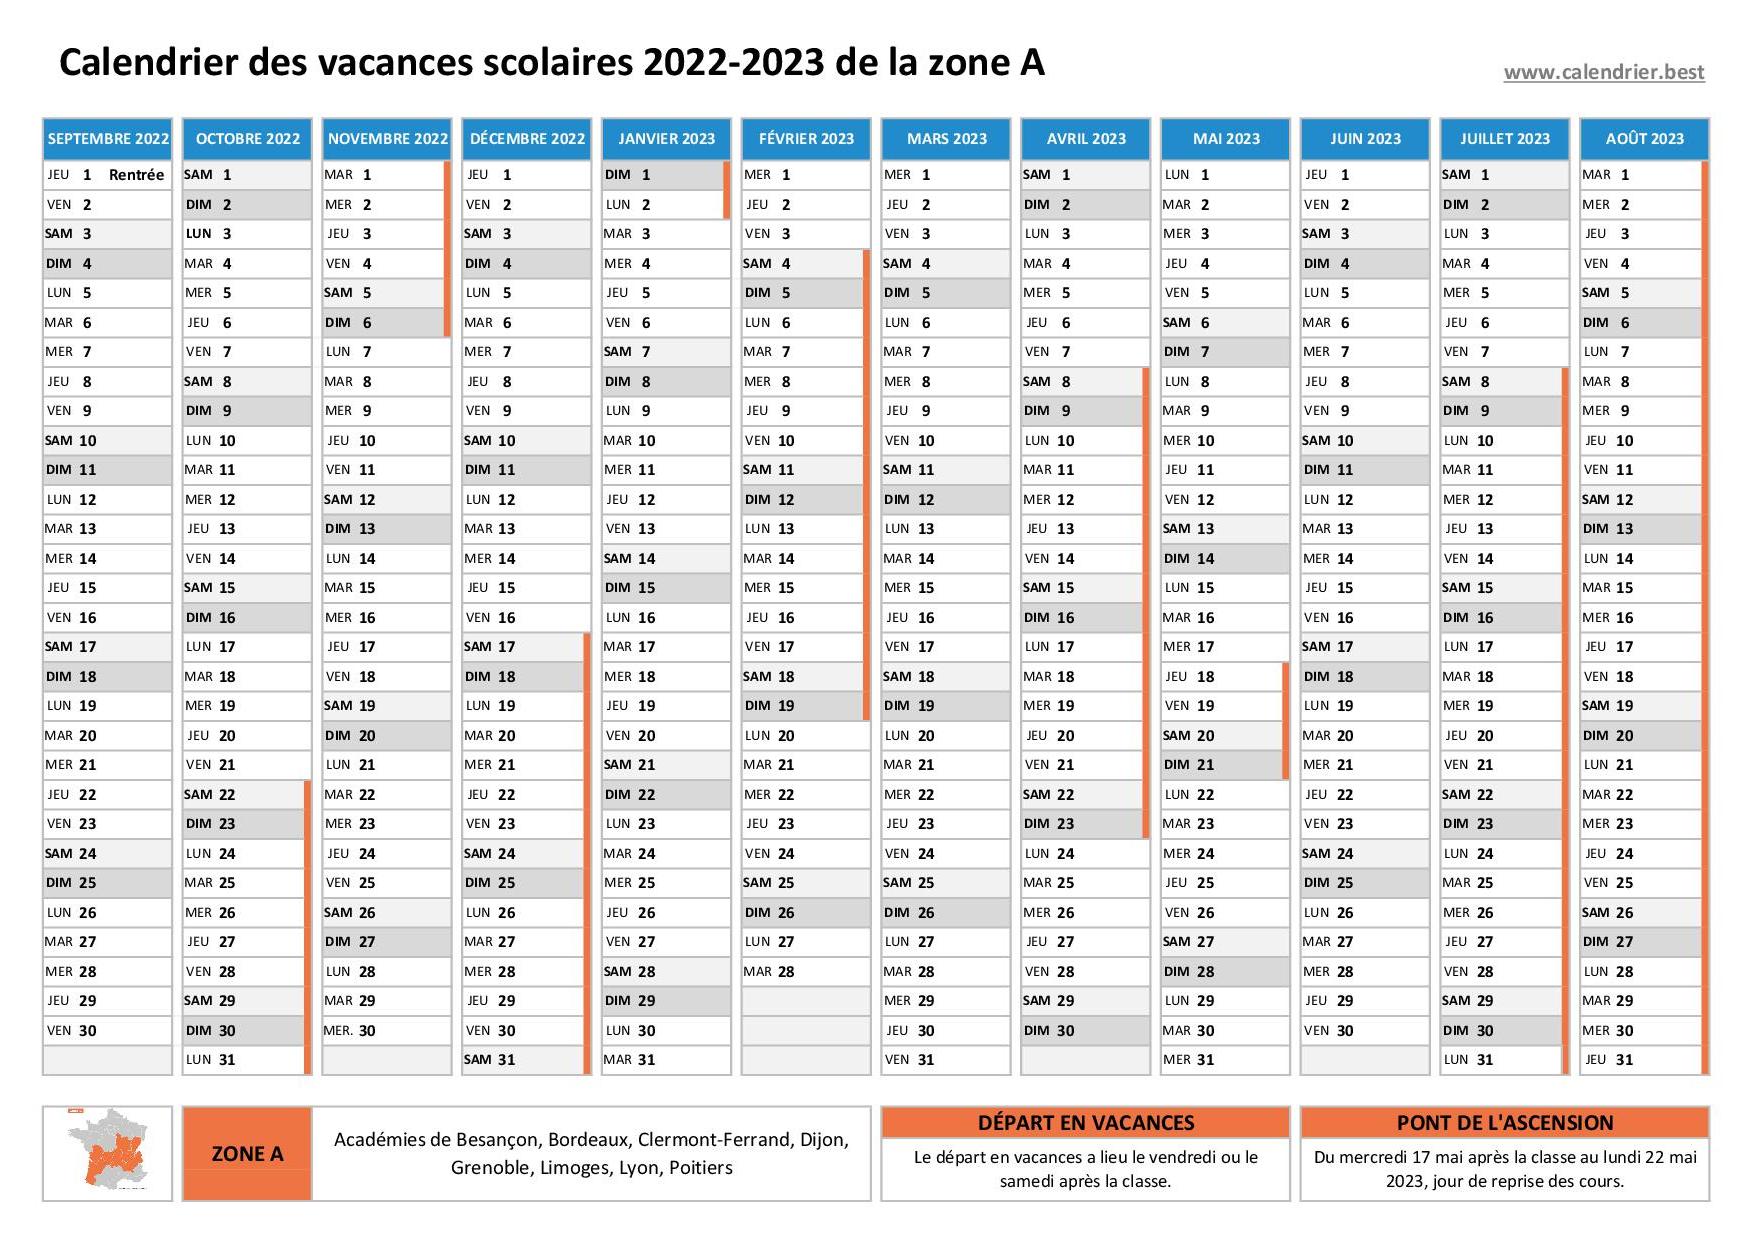 Vacances scolaires 2022 2023 Dijon : dates et calendrier scolaire 2022-2023